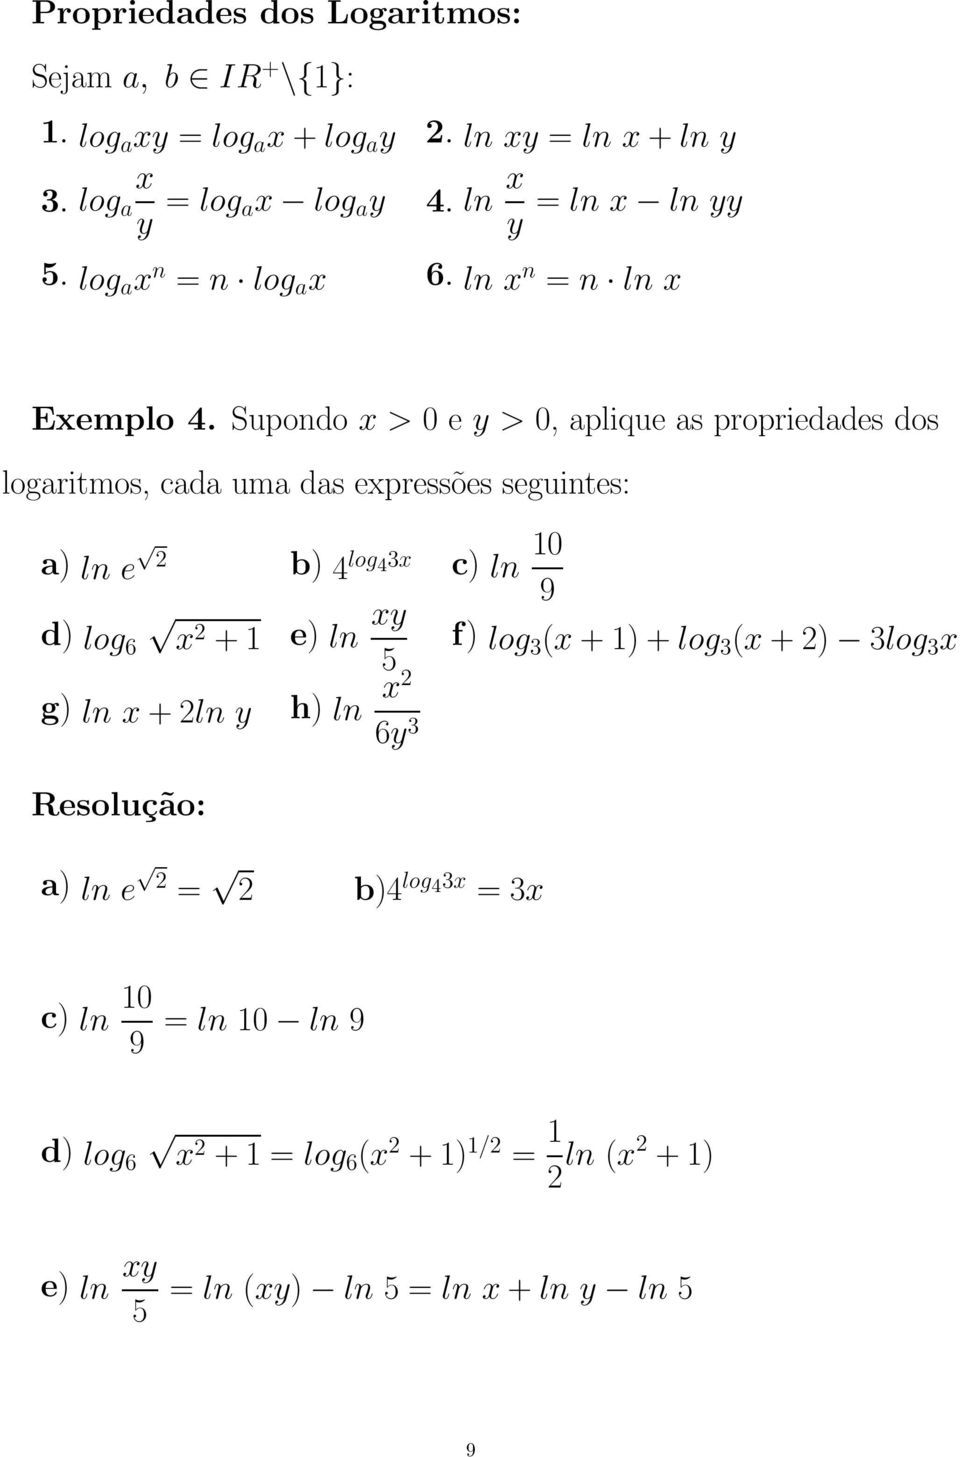 Supondo x > 0 e y > 0, aplique as propriedades dos logaritmos, cada uma das expressões seguintes: a) ln e b) 4 log 43x c) ln 10 9 d) log 6 x + 1 e)